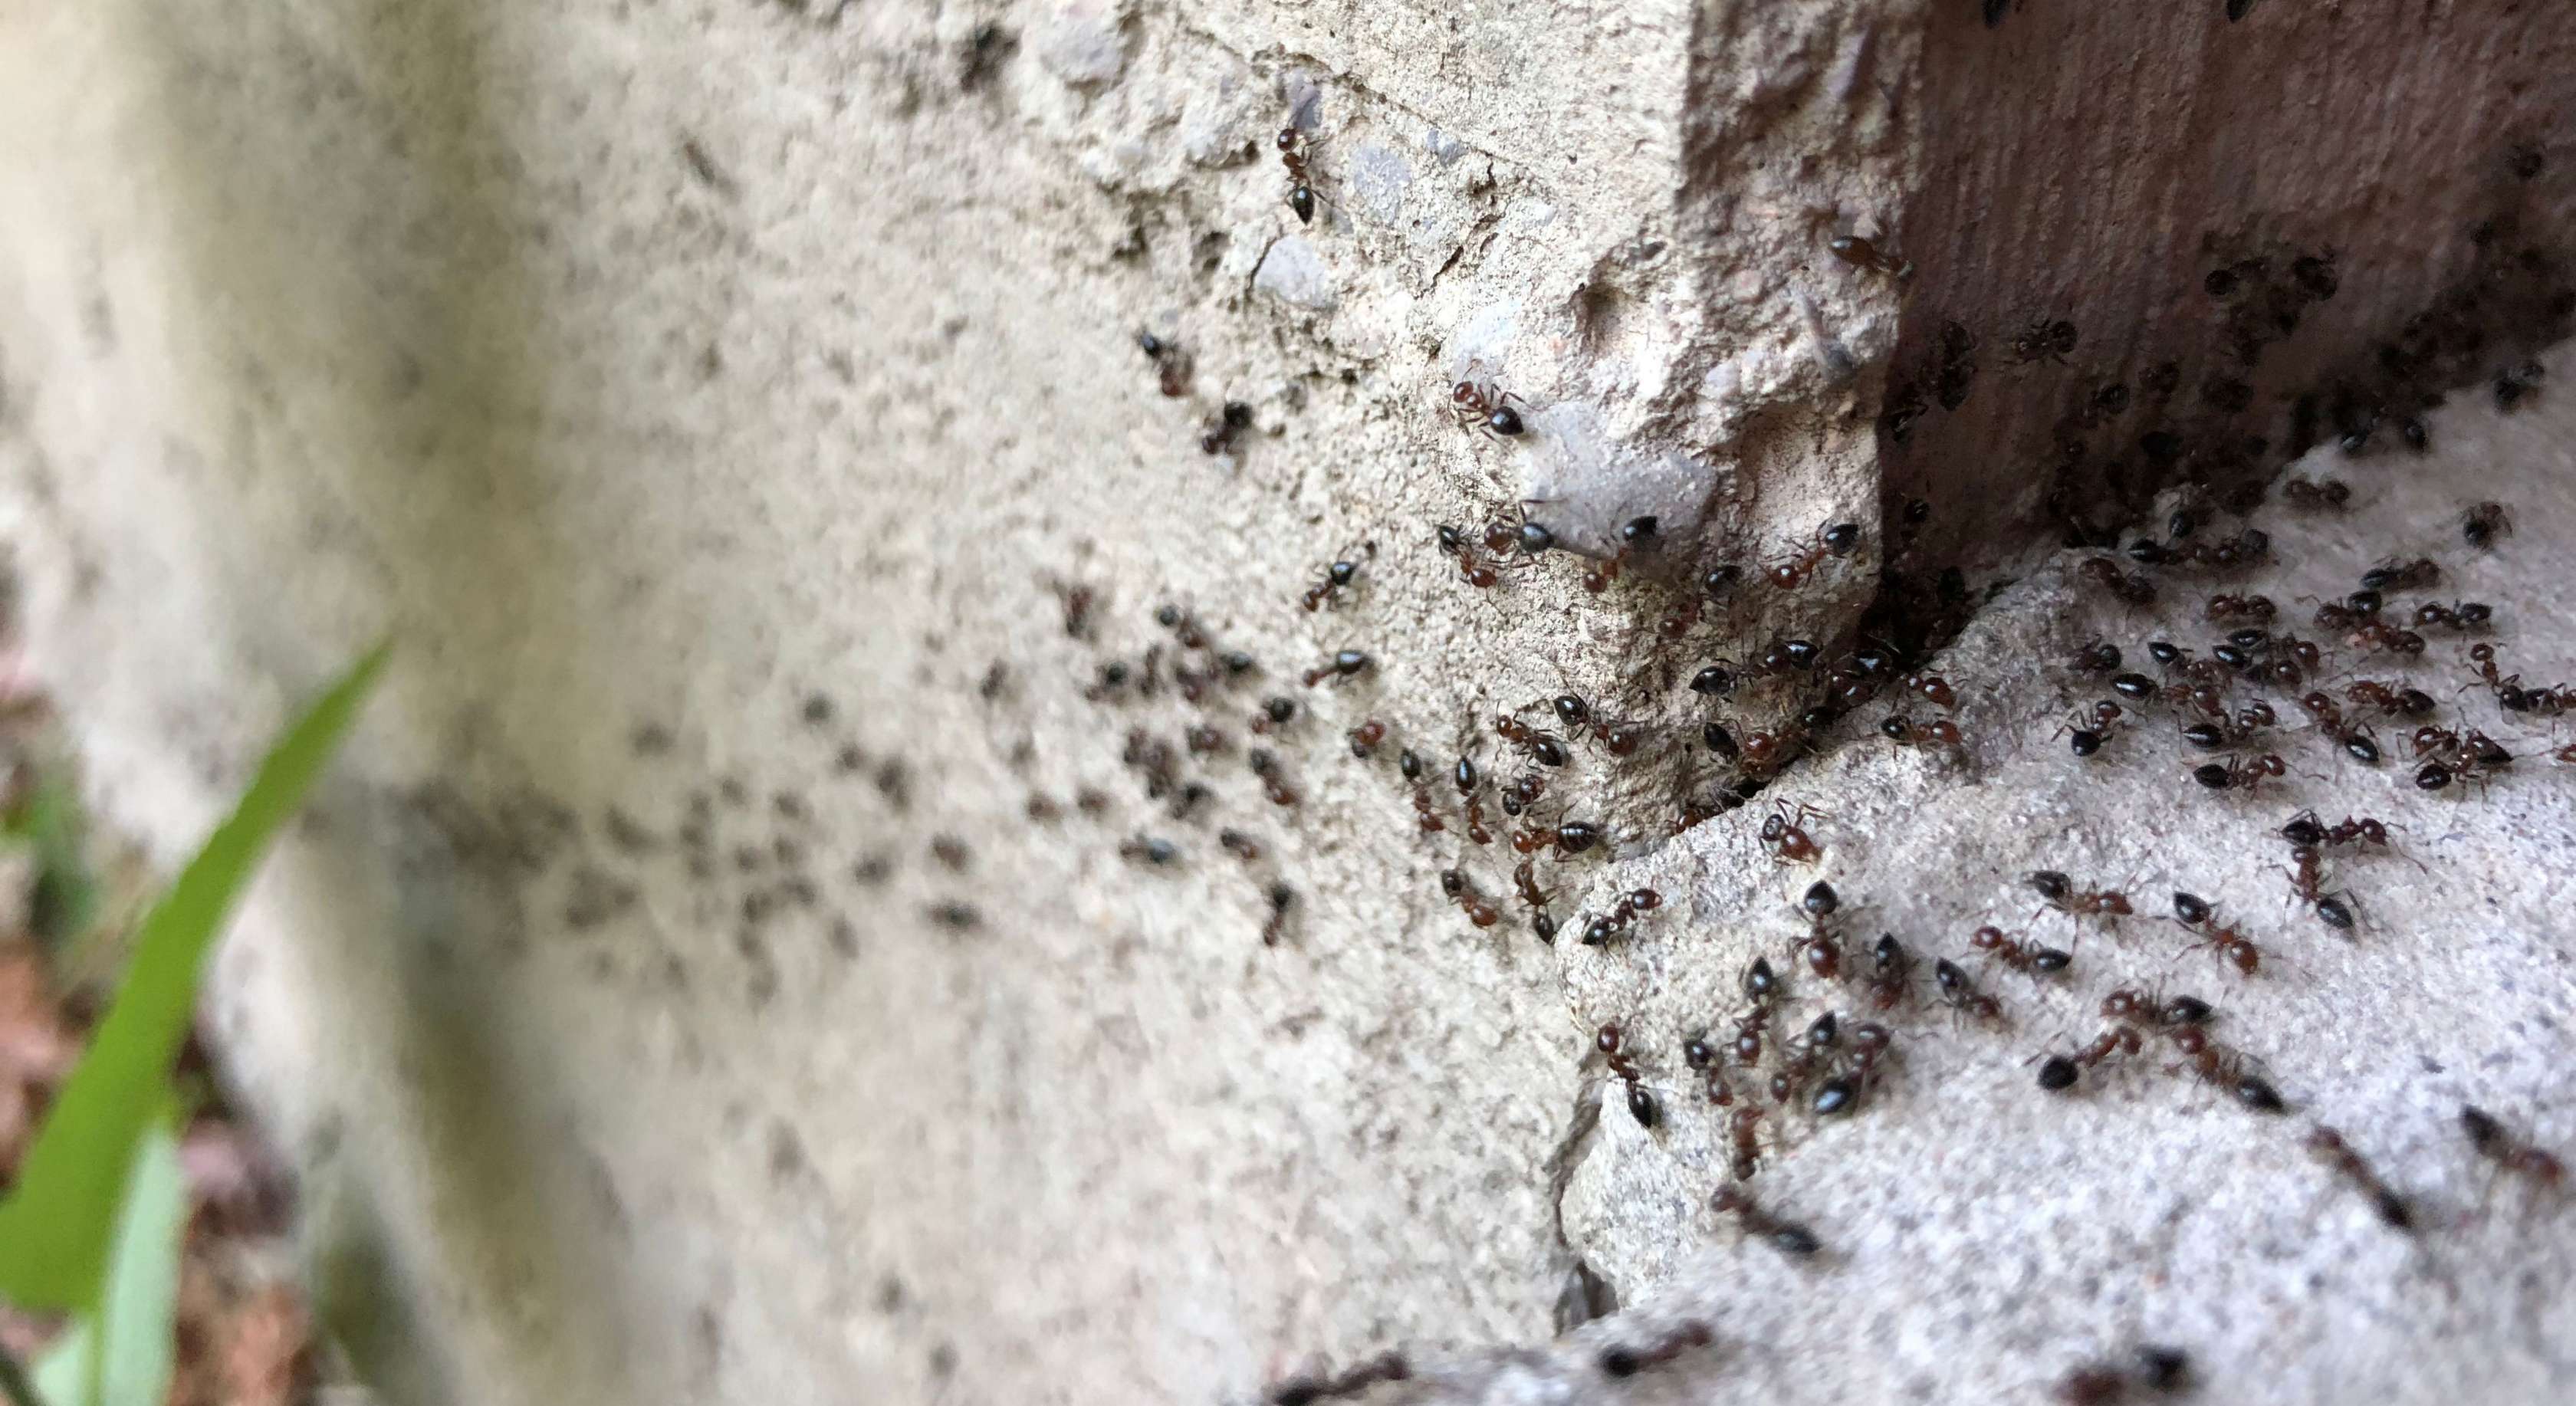 Ameisen im Haus: Ameisen gelangen durch Ritze ins Haus